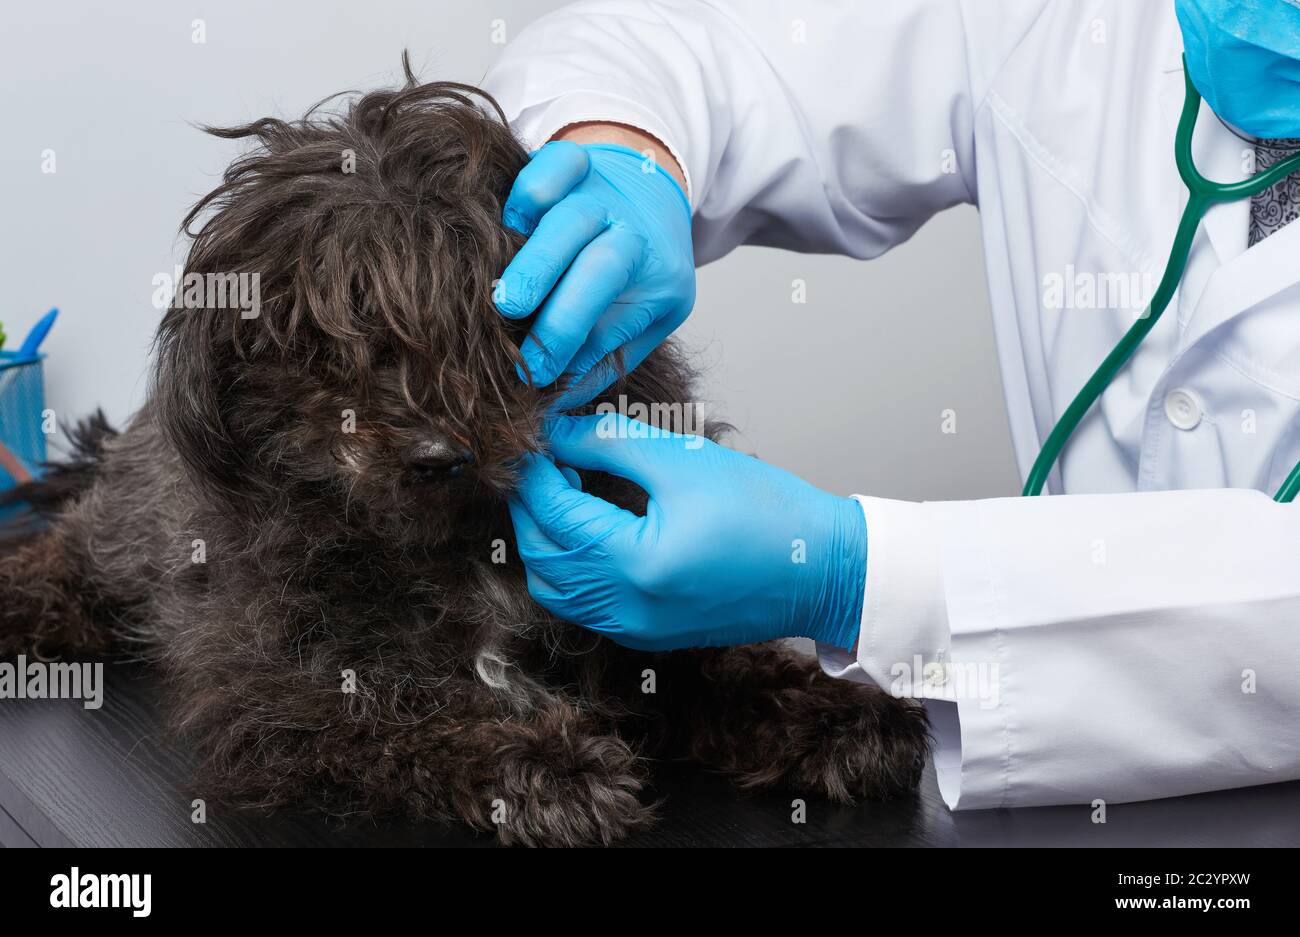 Tierarzt Mann in einem weißen medizinischen Mantel und blauen sterilen Handschuhen sitzt an einem Tisch und führt eine medizinische Untersuchung eines schwarzen flauschigen Hundes, Tierarztarbeitskleide, durch Stockfoto